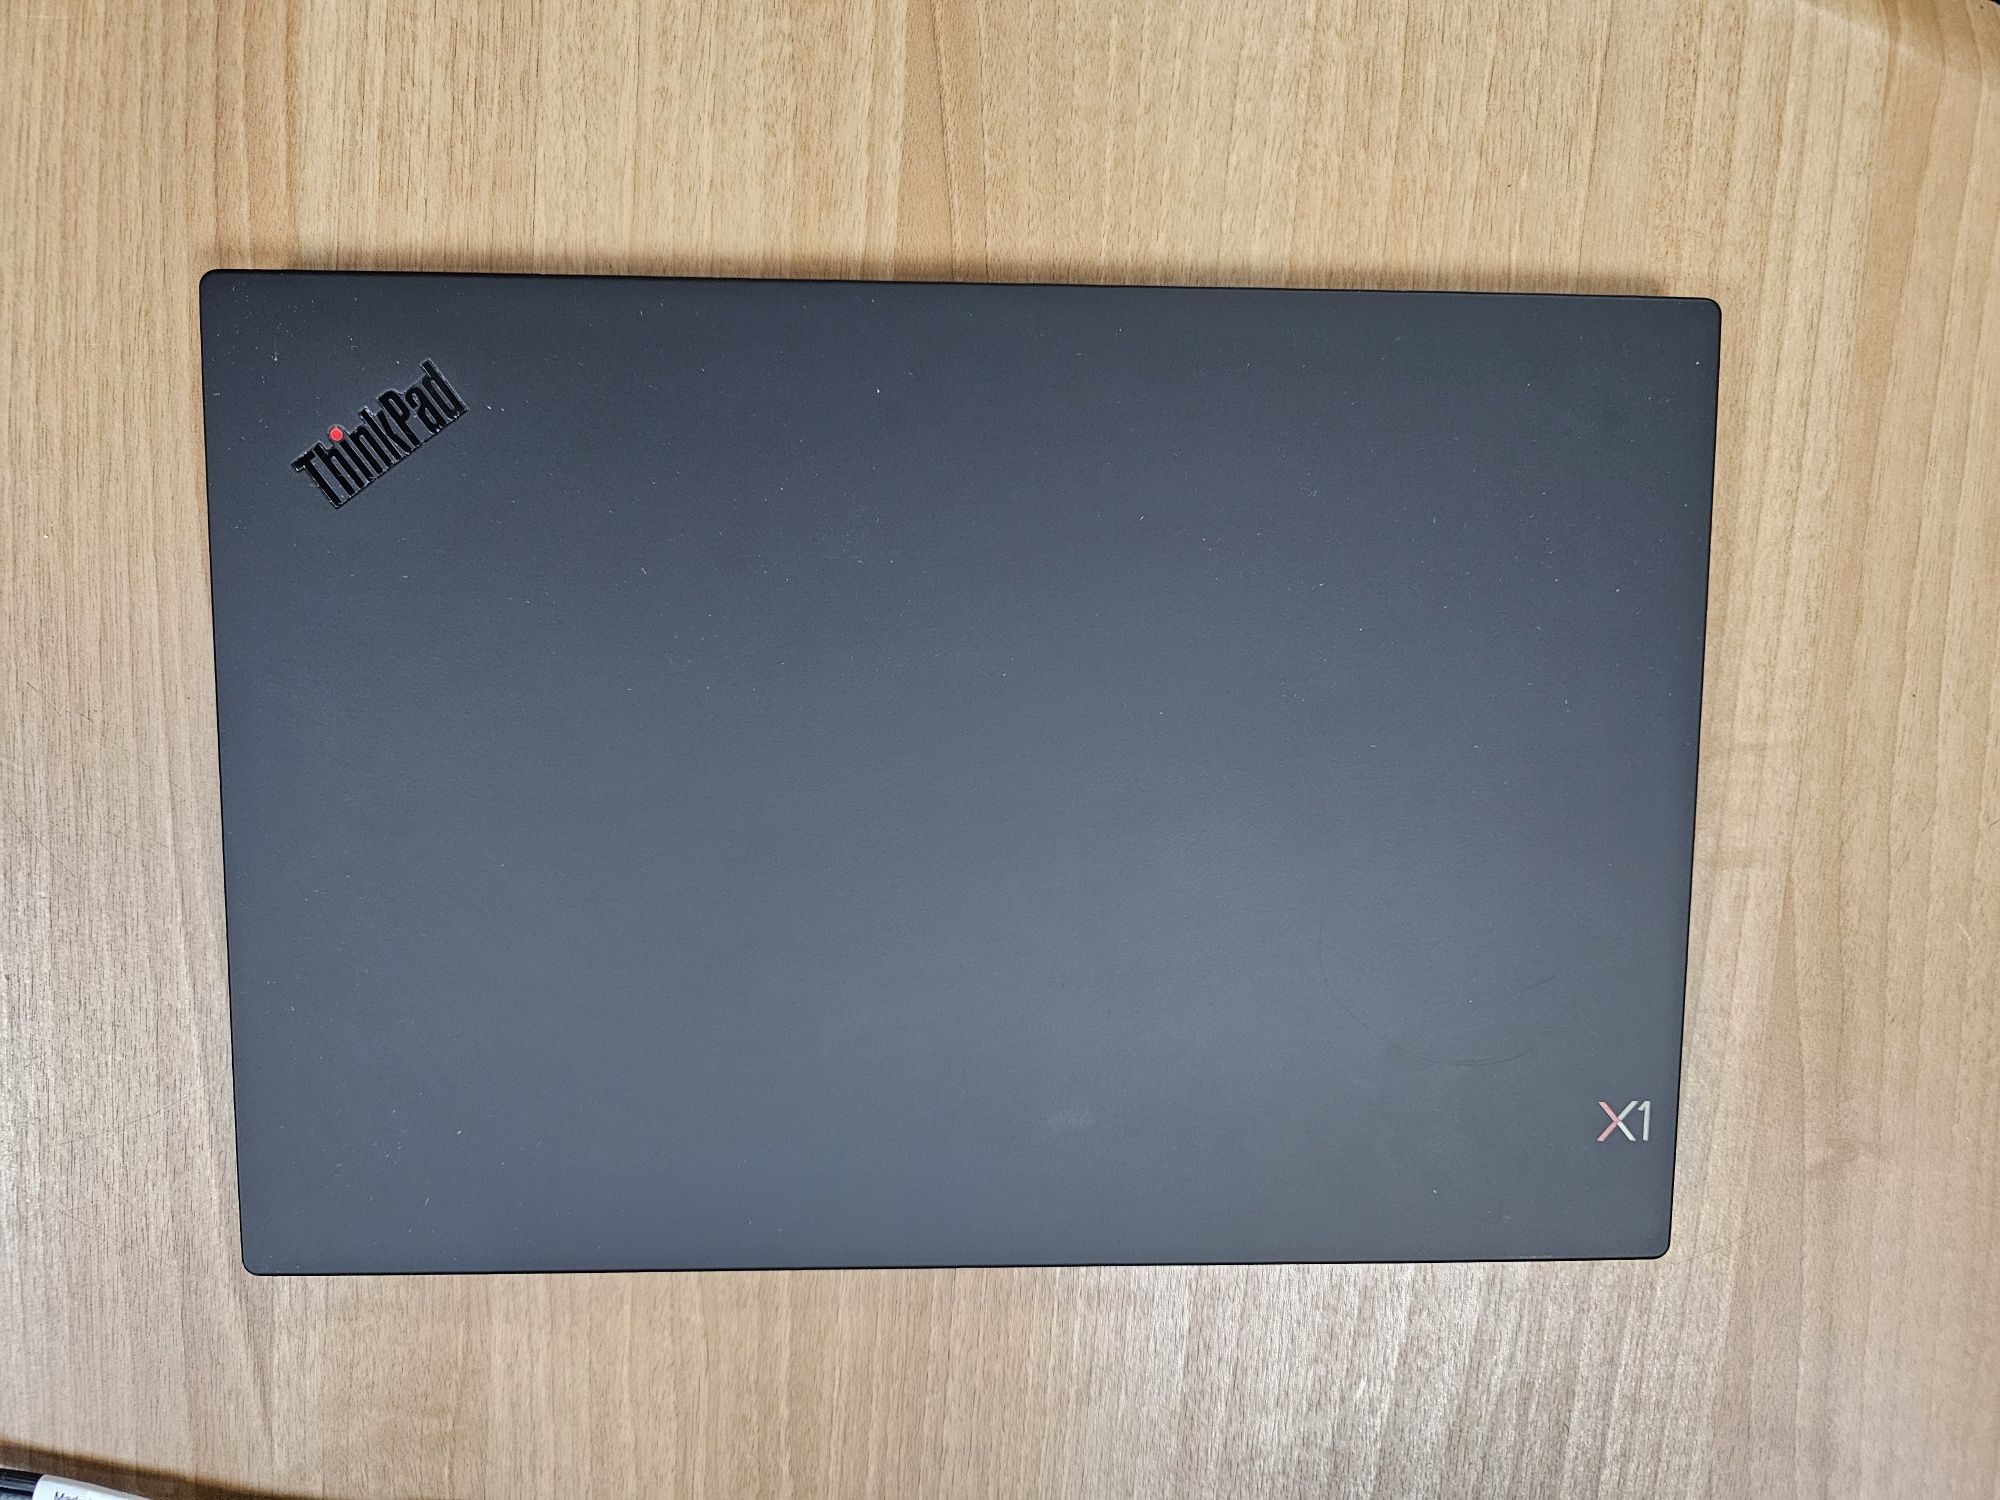 lenovo ThinkPad X1 Carbon Gen7 i7-8565U 16/512Gb FHD